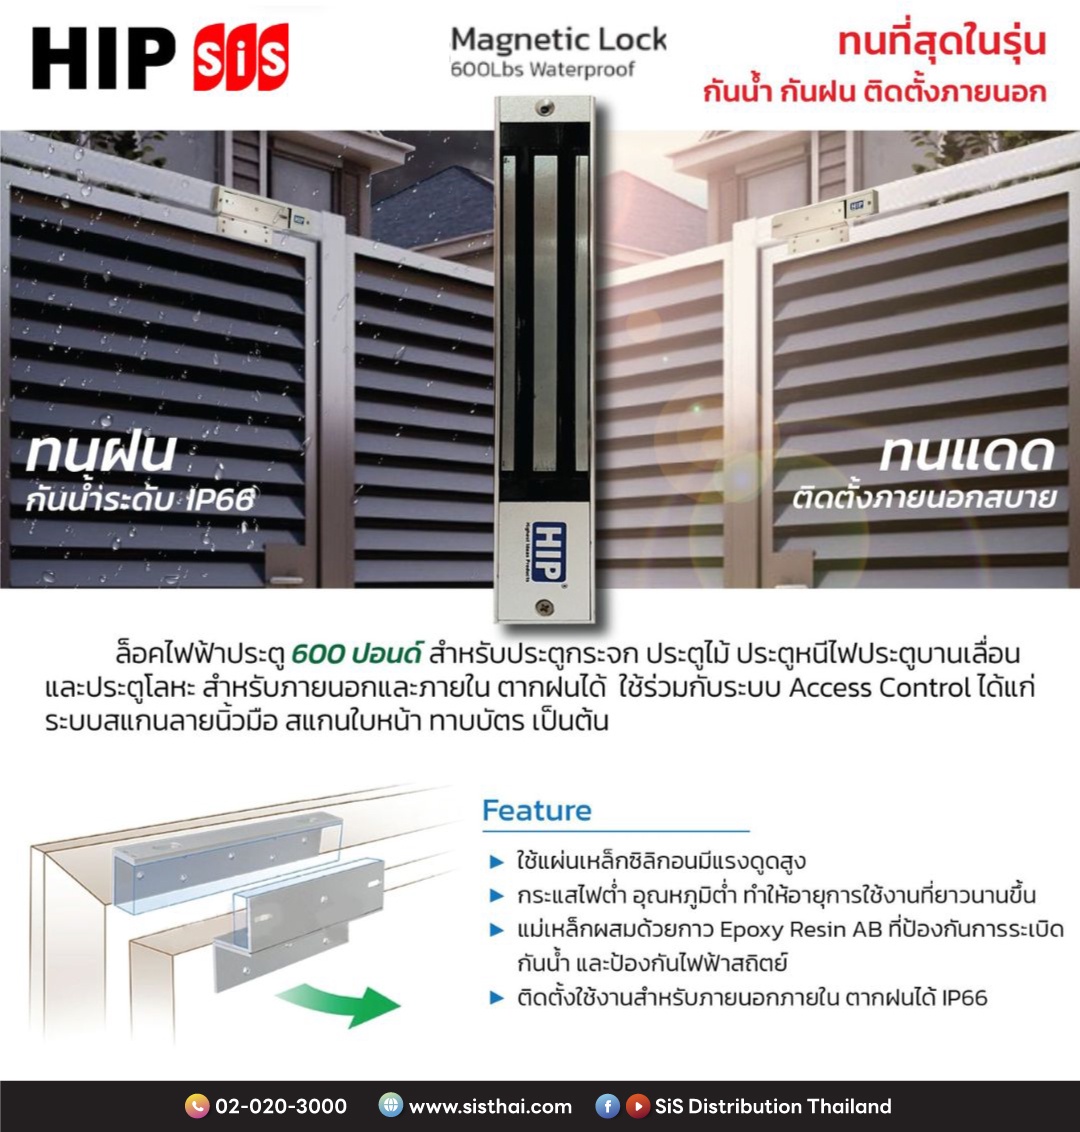 บมจ. เอสไอเอส ดิสทริบิวชั่น (ประเทศไทย) แนะนำ ชุดล็อคประตูกลอนแม่เหล็กไฟฟ้า จากแบรนด์ HIP